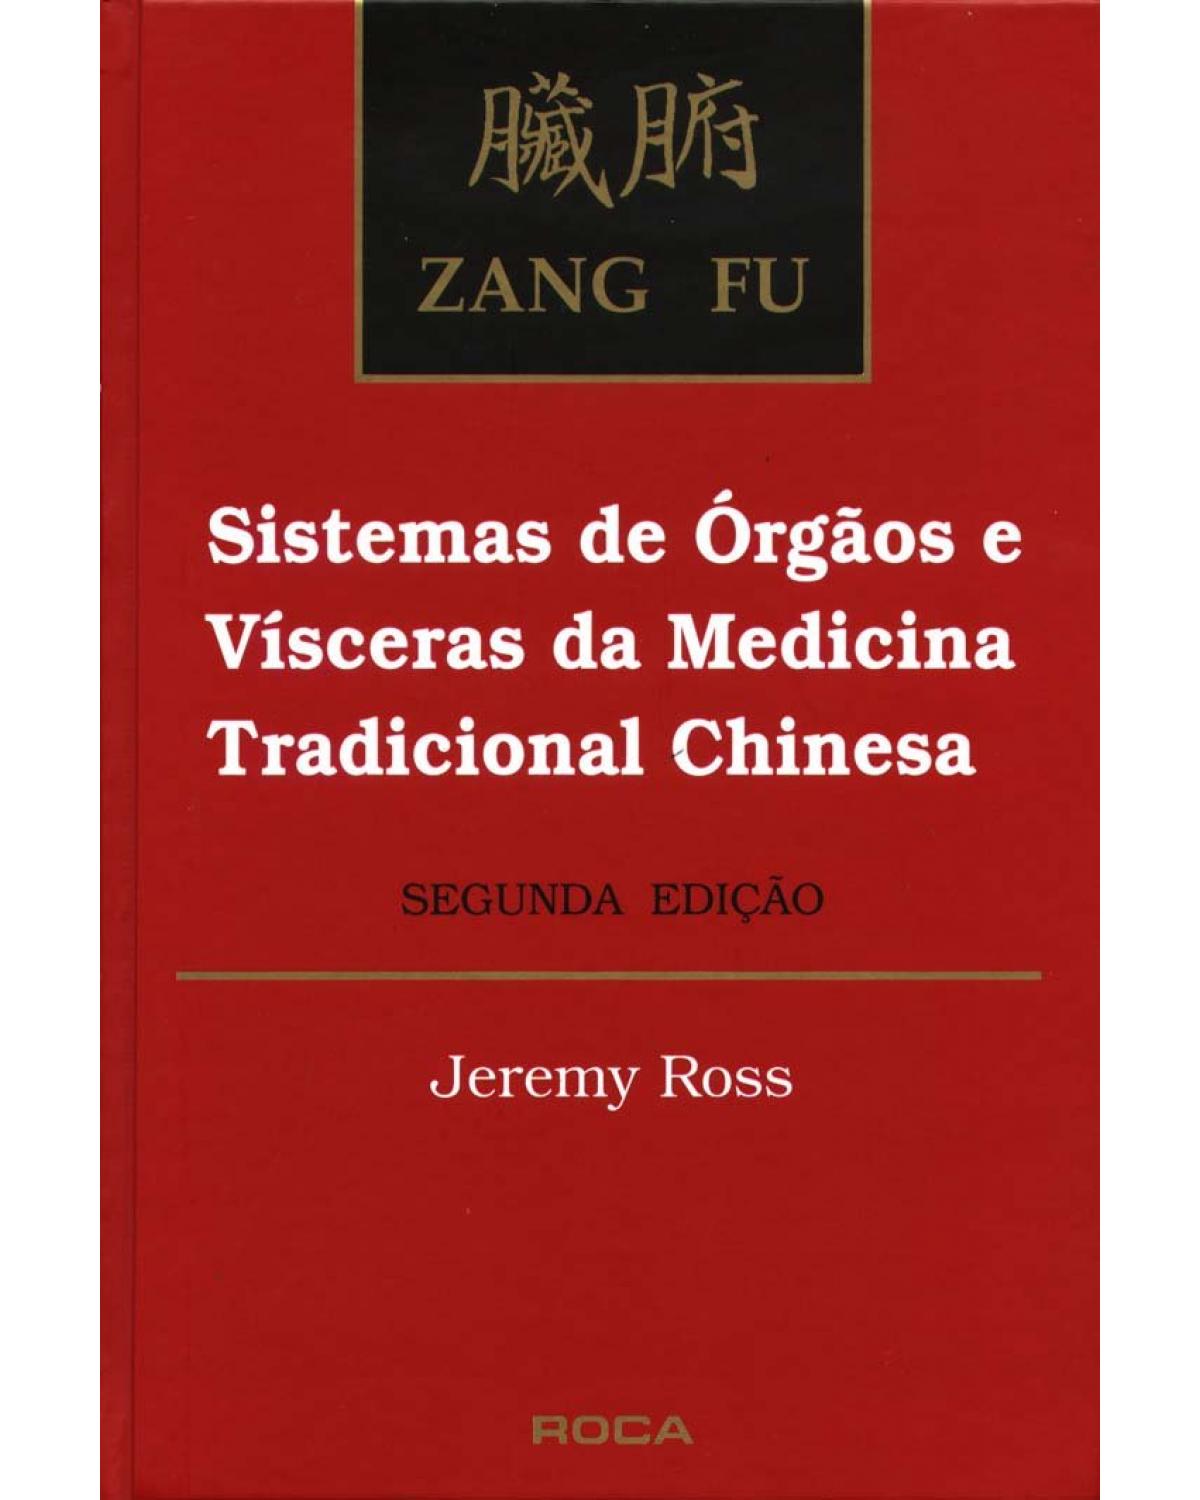 Zang fu - Sistemas de órgãos e vísceras da medicina tradicional chinesa - 2ª Edição | 1994